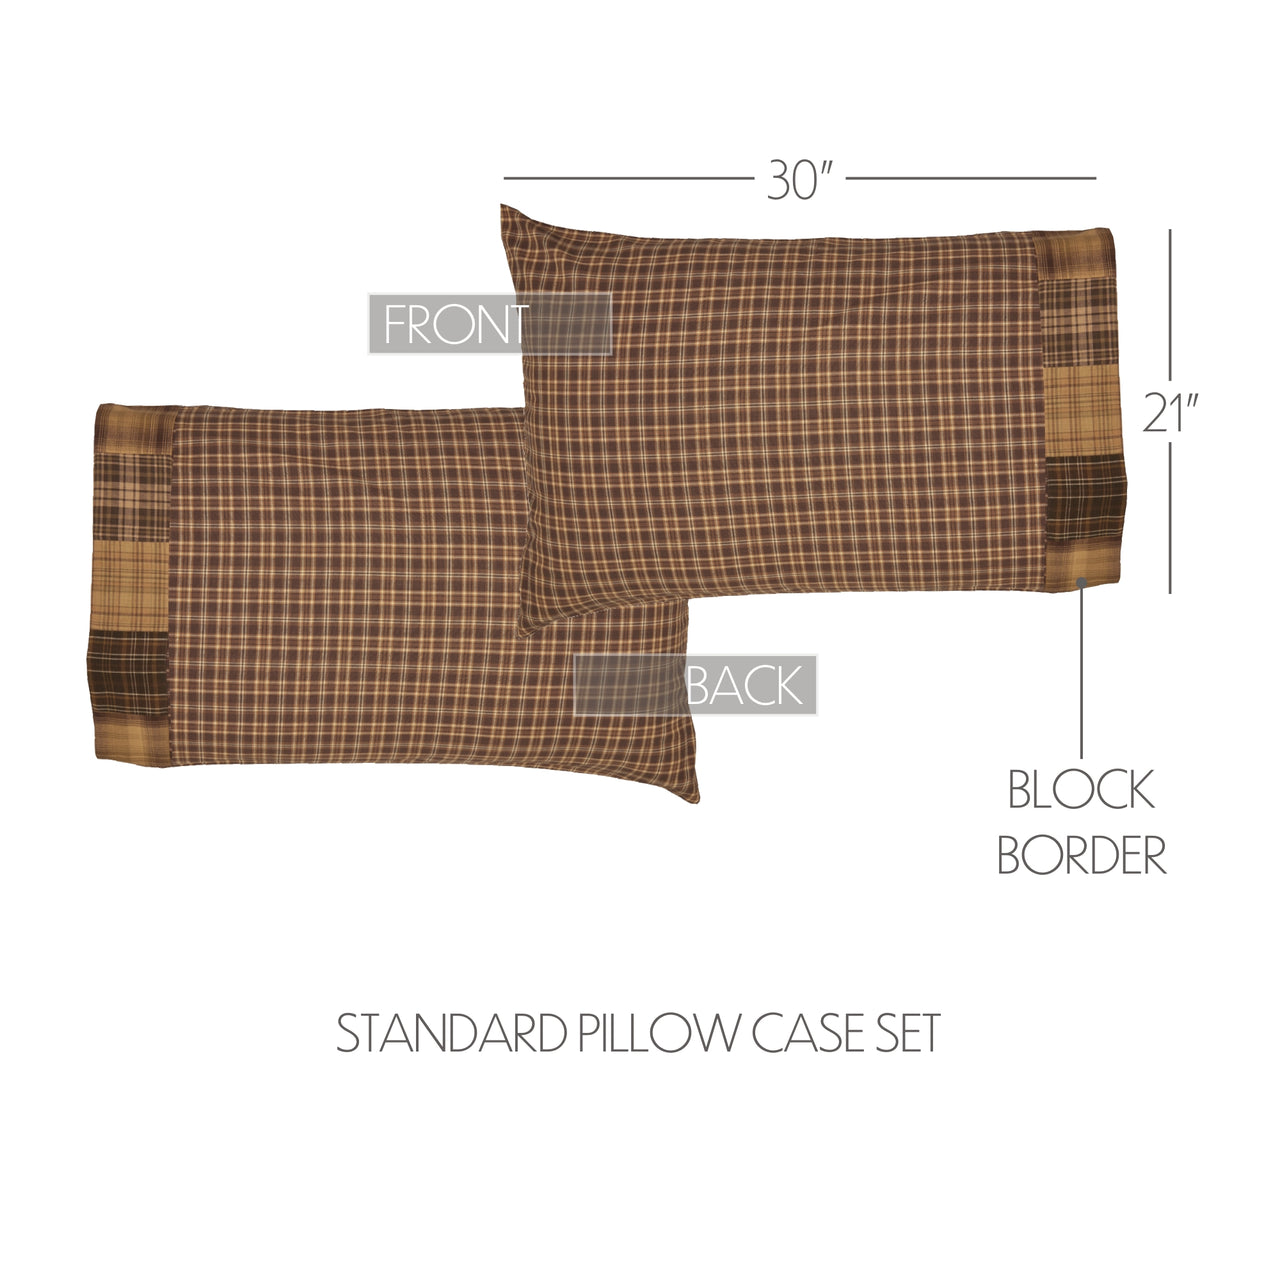 Prescott Standard Pillow Case Block Border Set of 2 21x30 VHC Brands